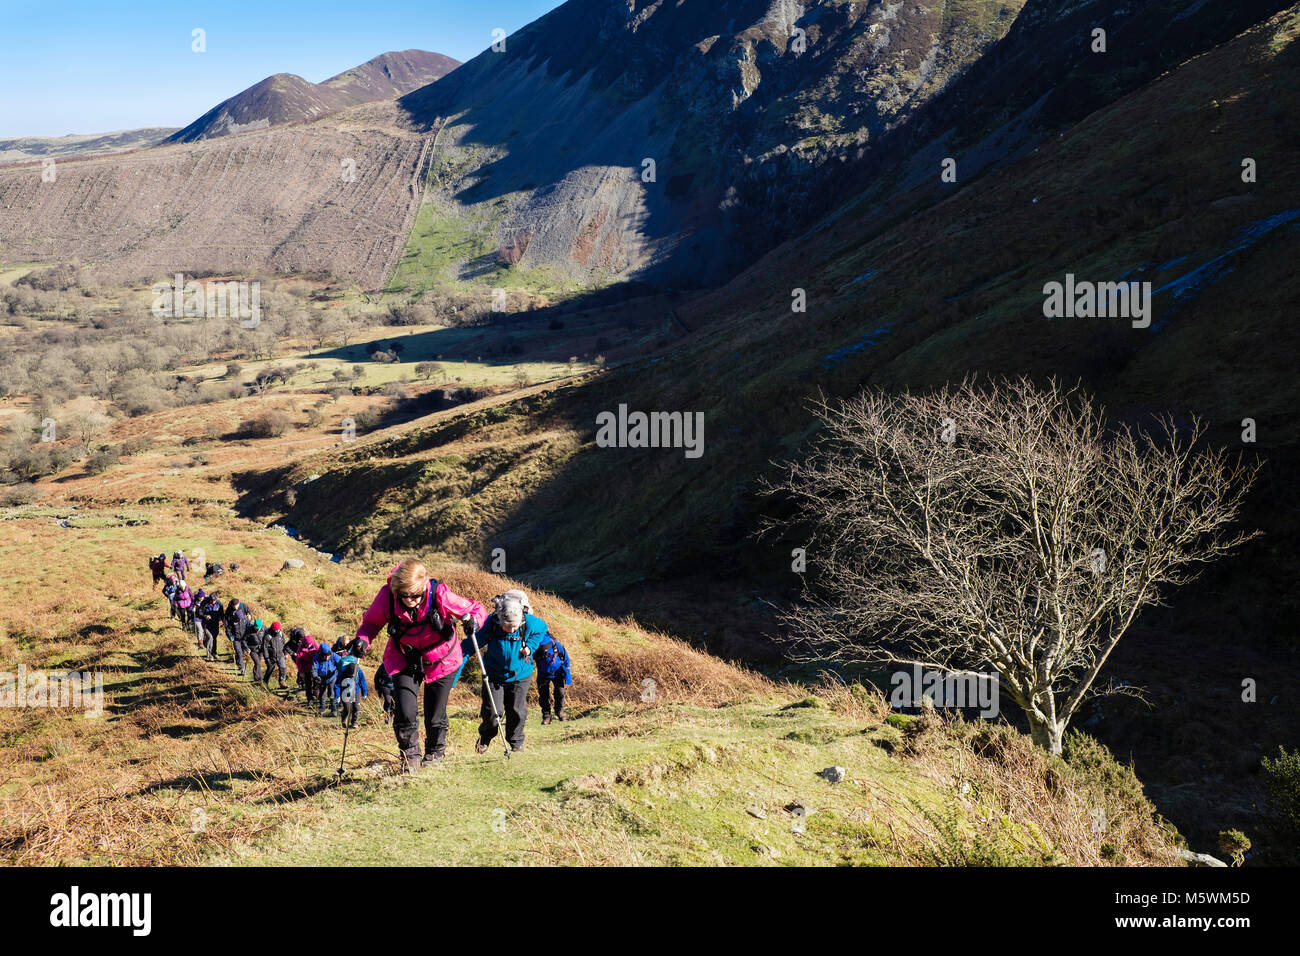 Groupe de randonneurs randonneurs randonnée jusqu'à la colline dans les hautes terres du nord du parc national de Snowdonia Abergwyngregyn ci-dessus, Gwynedd, Pays de Galles, Royaume-Uni, Angleterre Banque D'Images